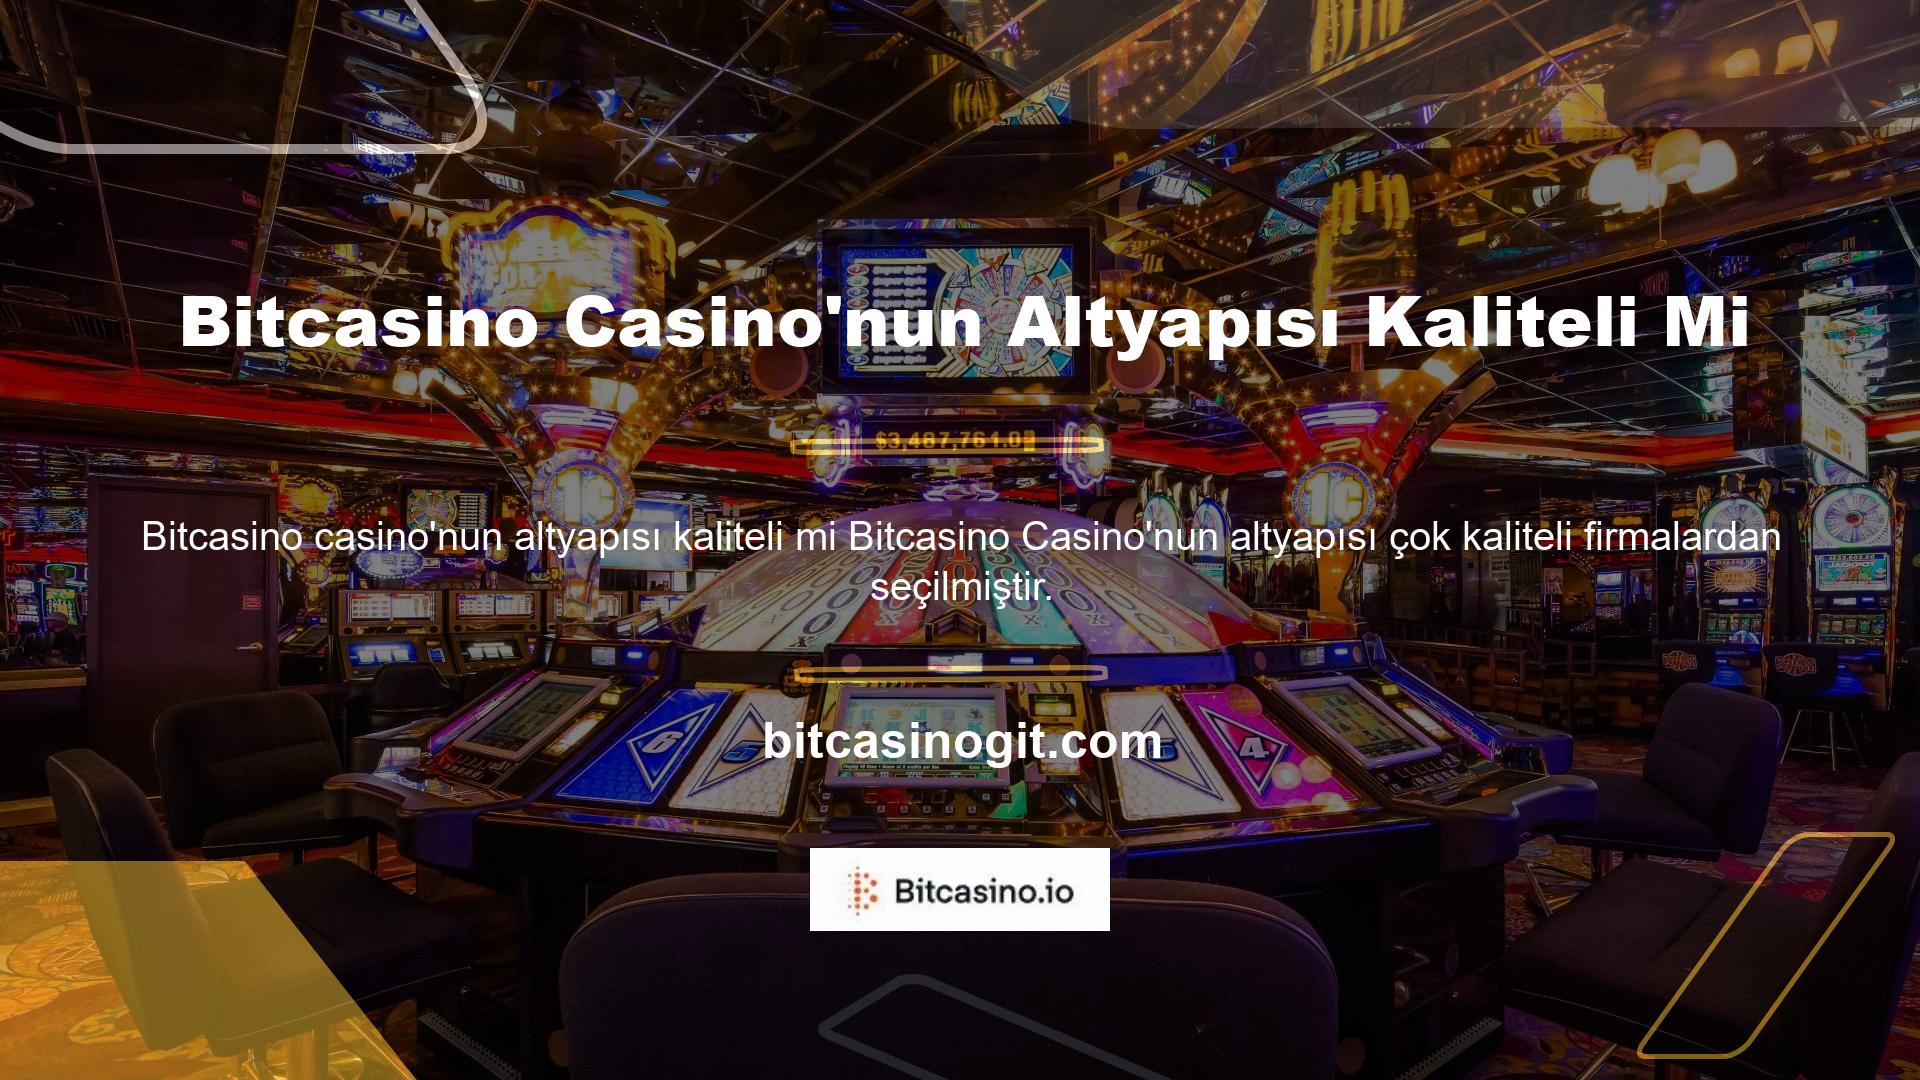 Ülkemizde casinolar yasaktır ve bu tür hizmetler uzun süredir verilmemektedir